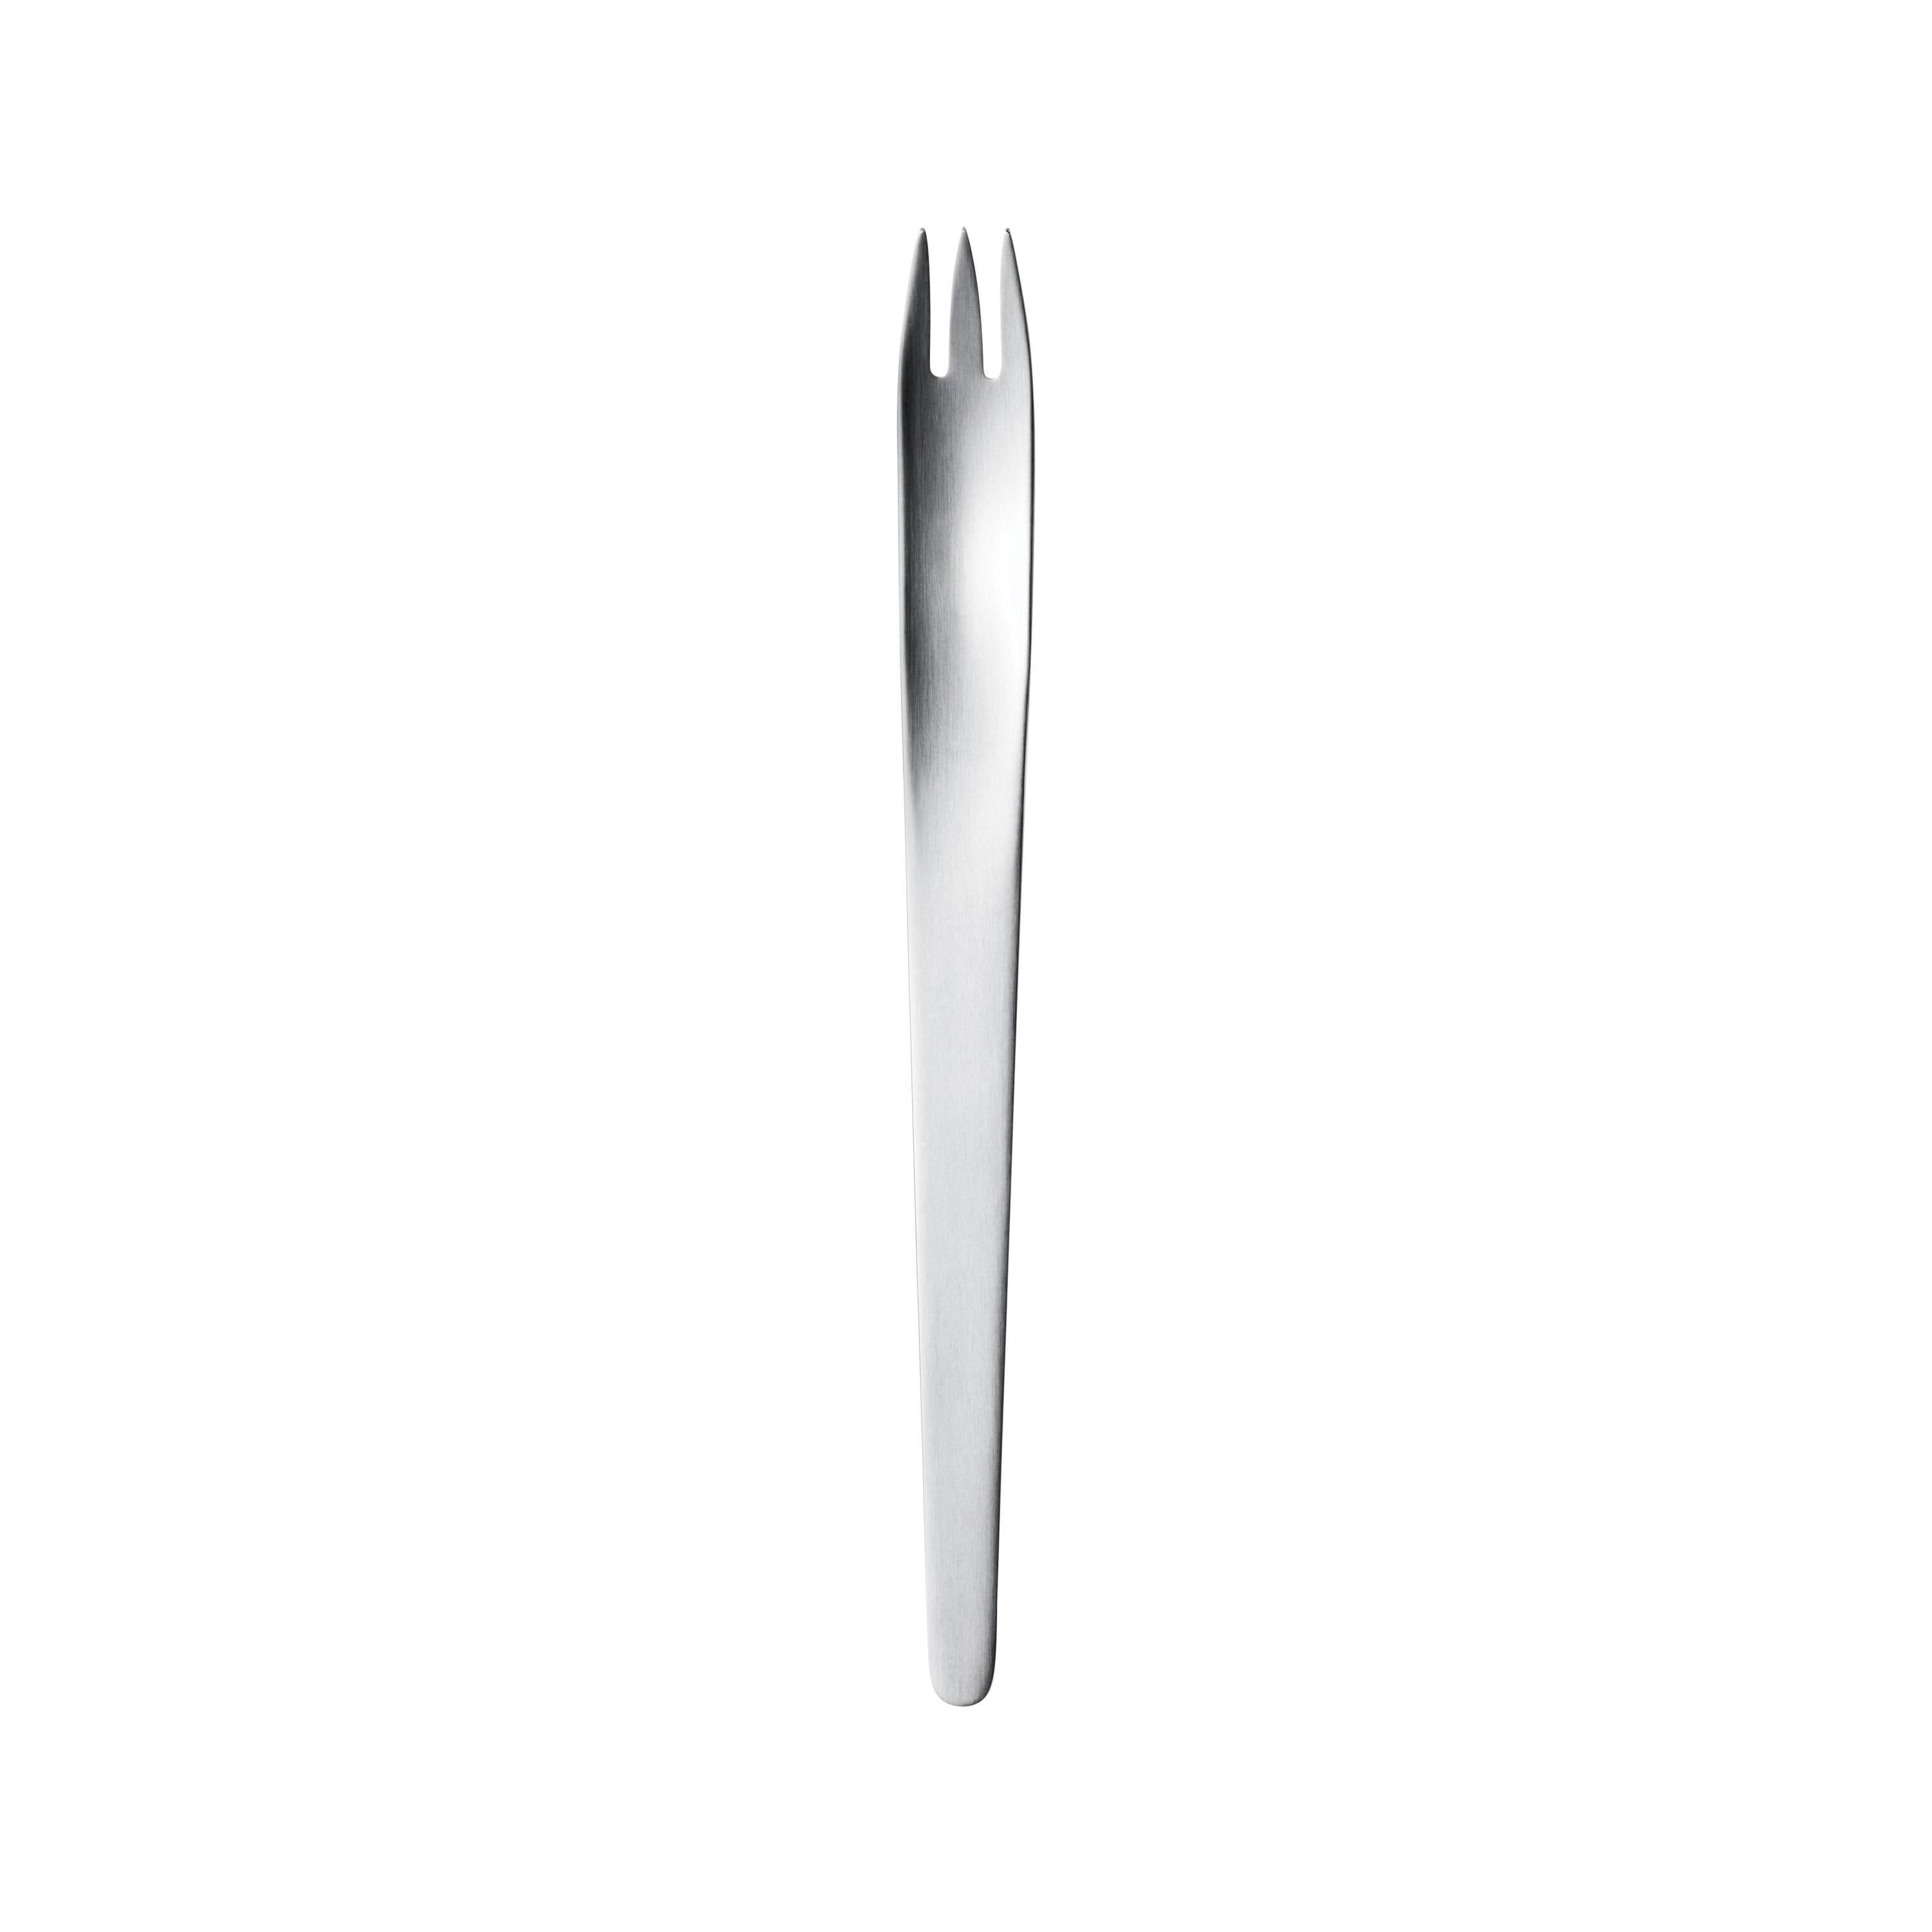 Georg Jensen Dinner Fork in Stainless Steel Matte Finish by Arne Jacobsen